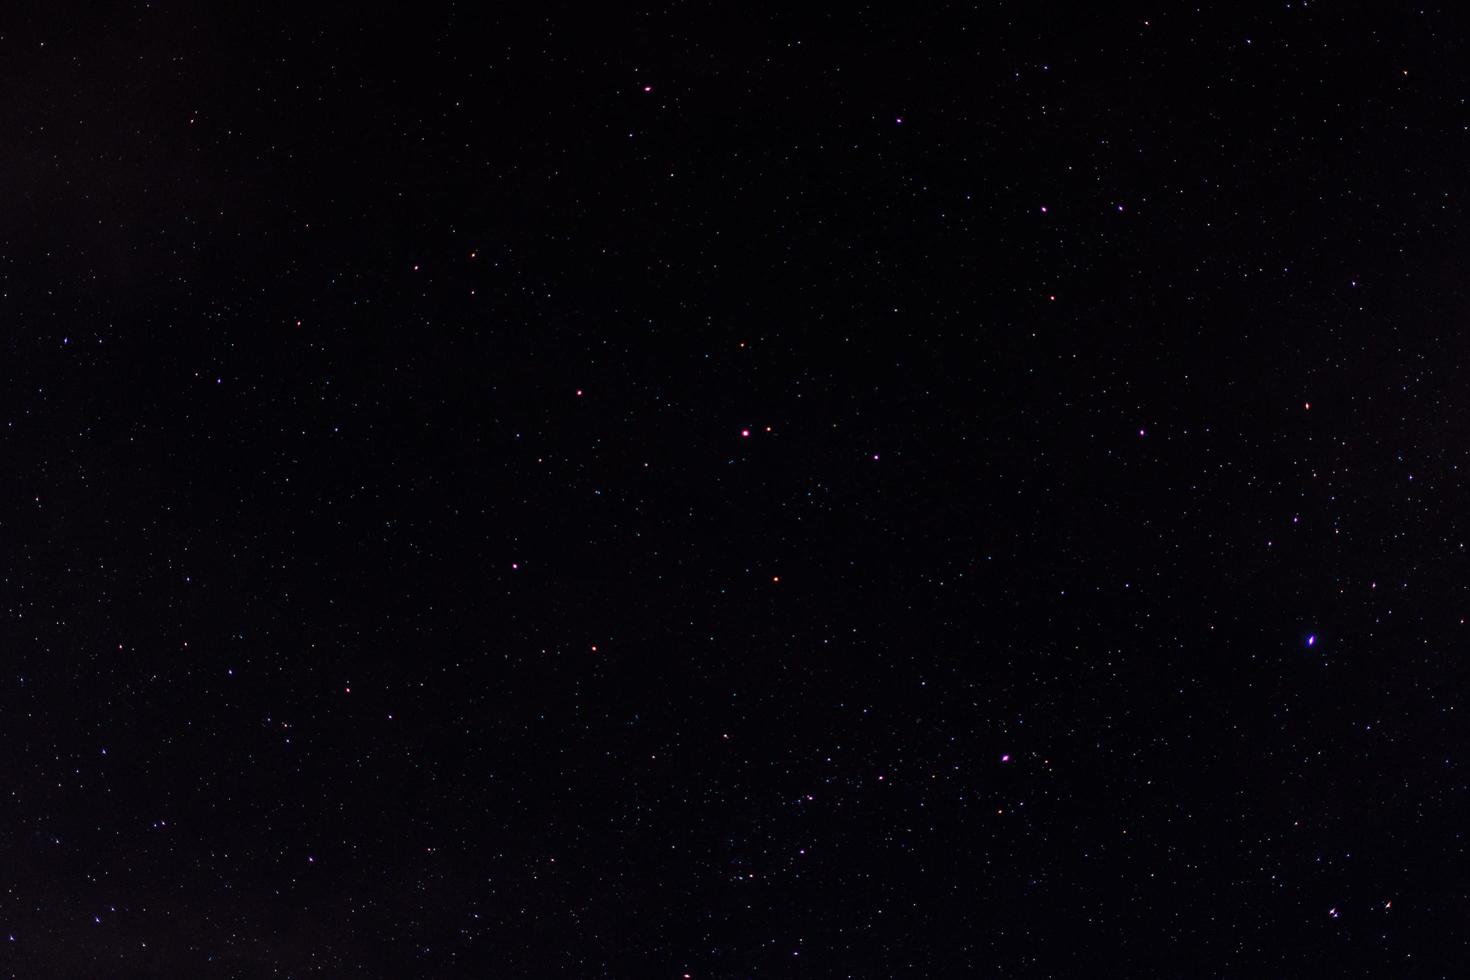 der Himmel, Wolken und Sterne in der Nacht foto